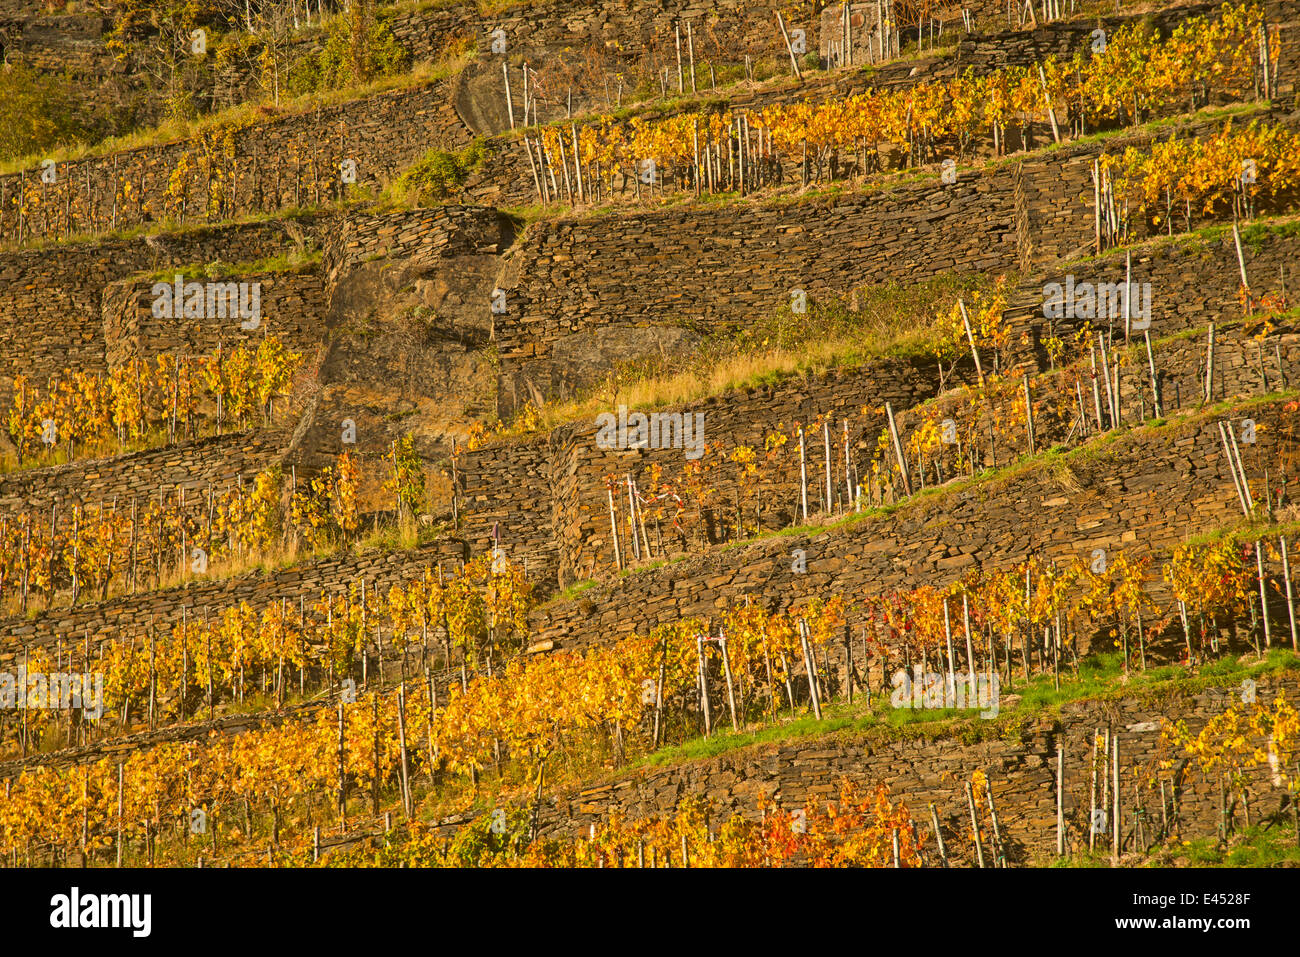 Weinberg im Herbst, rote Weinbaugebiet des Pinot Noir und portugiesischen Rebsorten, Ahrtal, Eifel Stockfoto